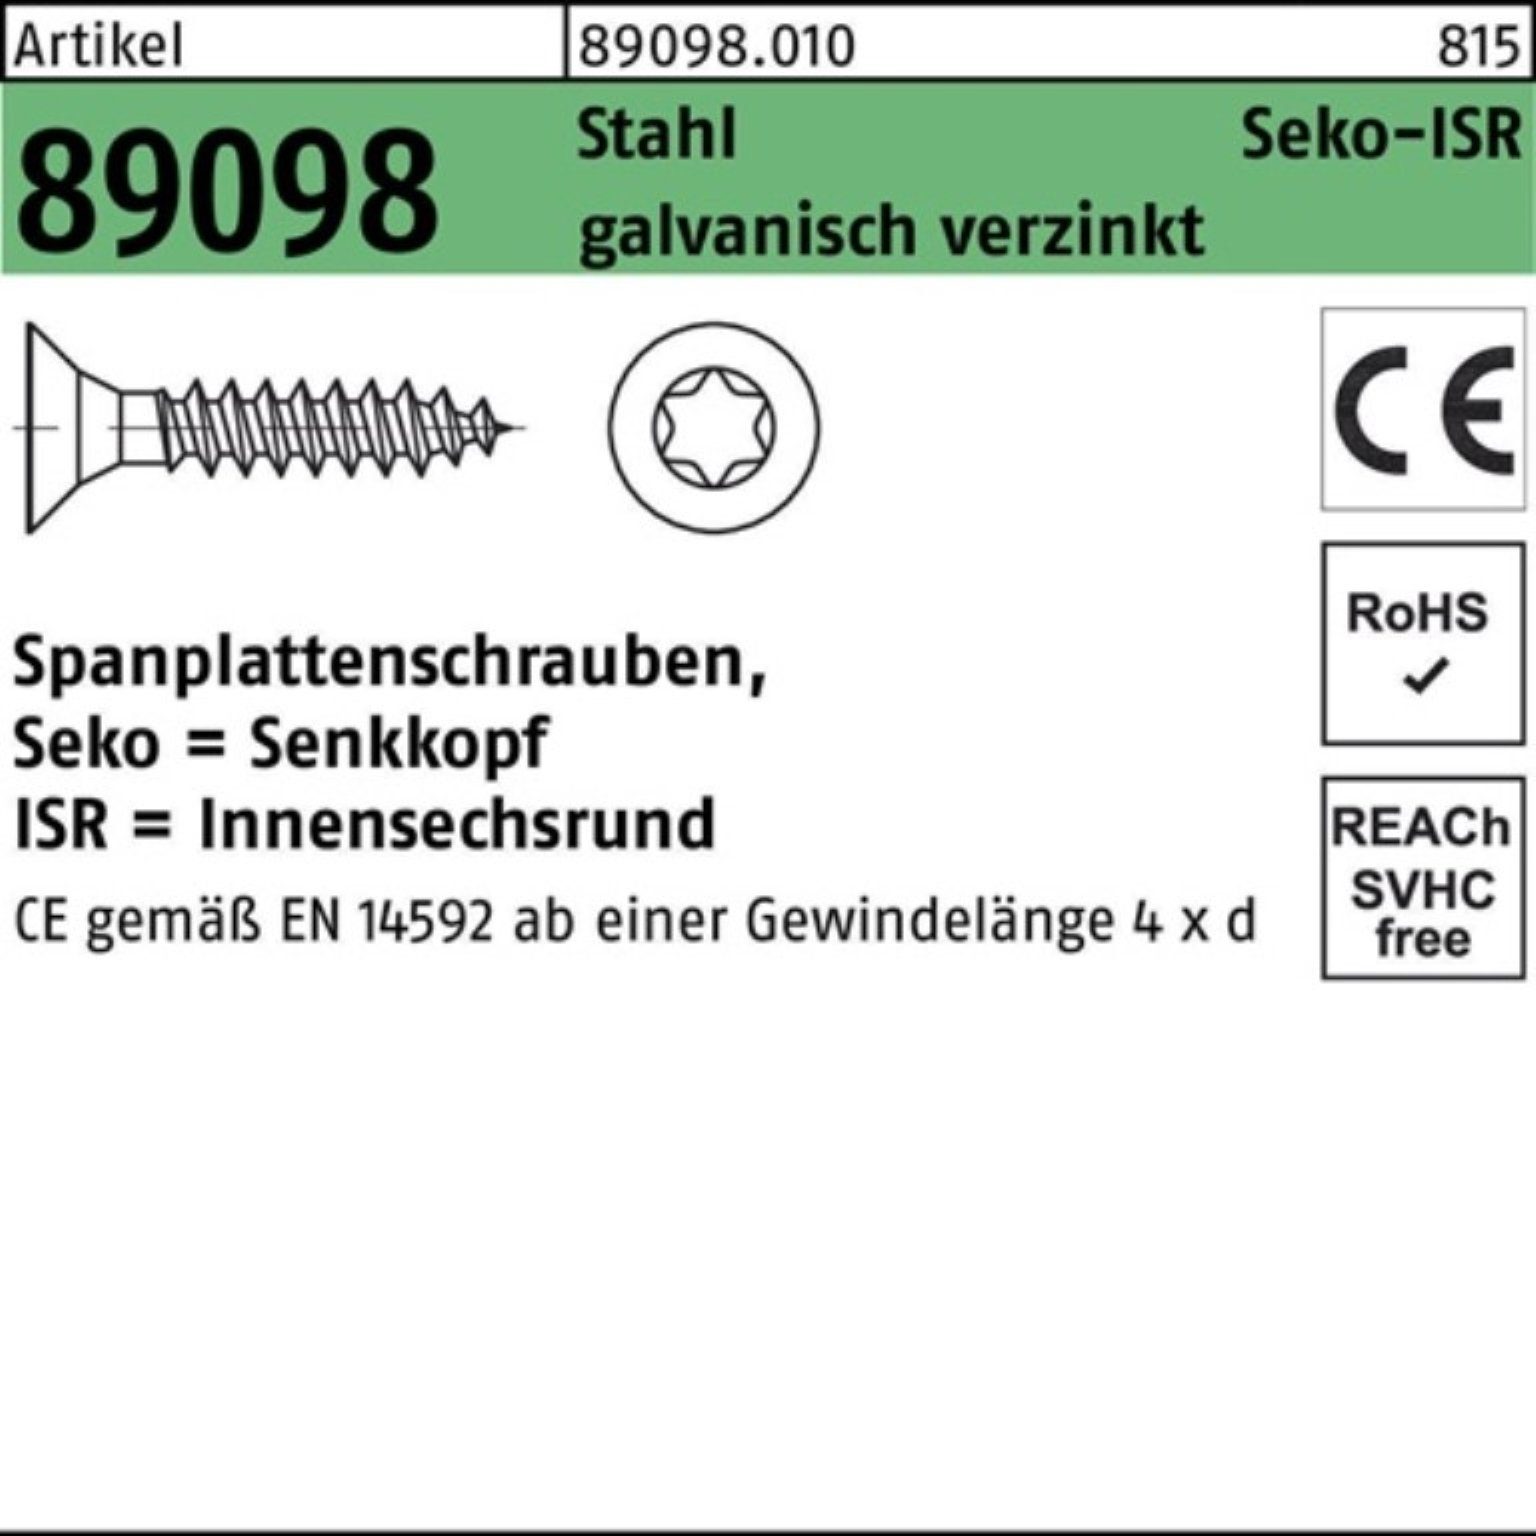 5x30-T25 SEKO ISR Pack VG 500er Reyher galv Spanplattenschraube Stahl 89098 R Spanplattenschraube